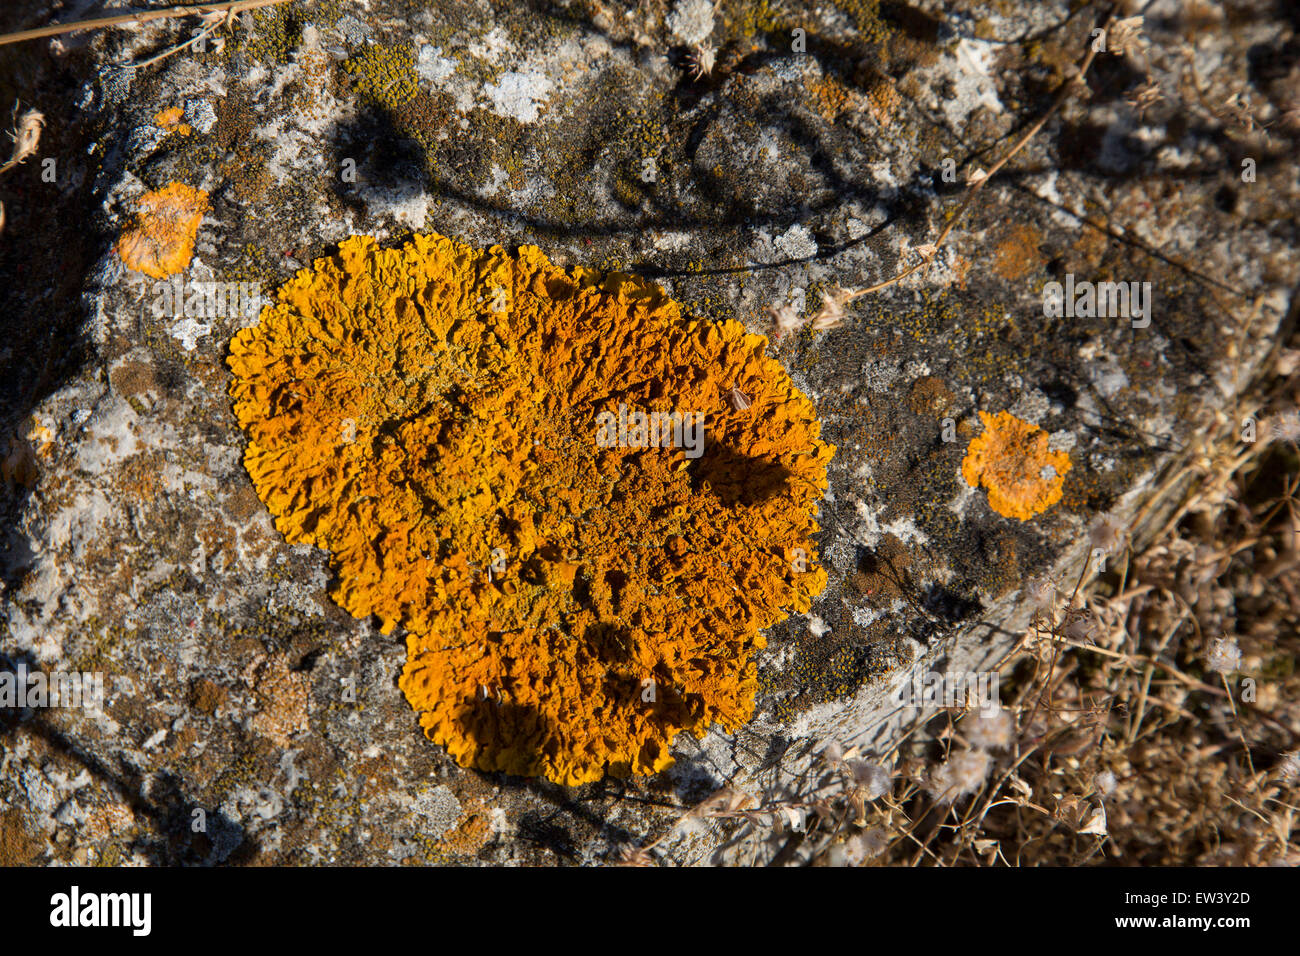 Liquen naranja sobre una roca en Gruissan, Languedoc-Roussillon, Francia. Liquen es un organismo compuesto que surge de las algas o las cianobacterias (o ambos) que viven entre filamentos de un hongo en una relación mutuamente beneficiosa (symbiotoc relación). Toda forma de vida combinada tiene propiedades que son muy diferentes de las propiedades de sus componentes de los organismos. Líquenes vienen en muchos colores, tamaños y formas. Las propiedades son a veces similares a las plantas, pero los líquenes no son plantas. Foto de stock